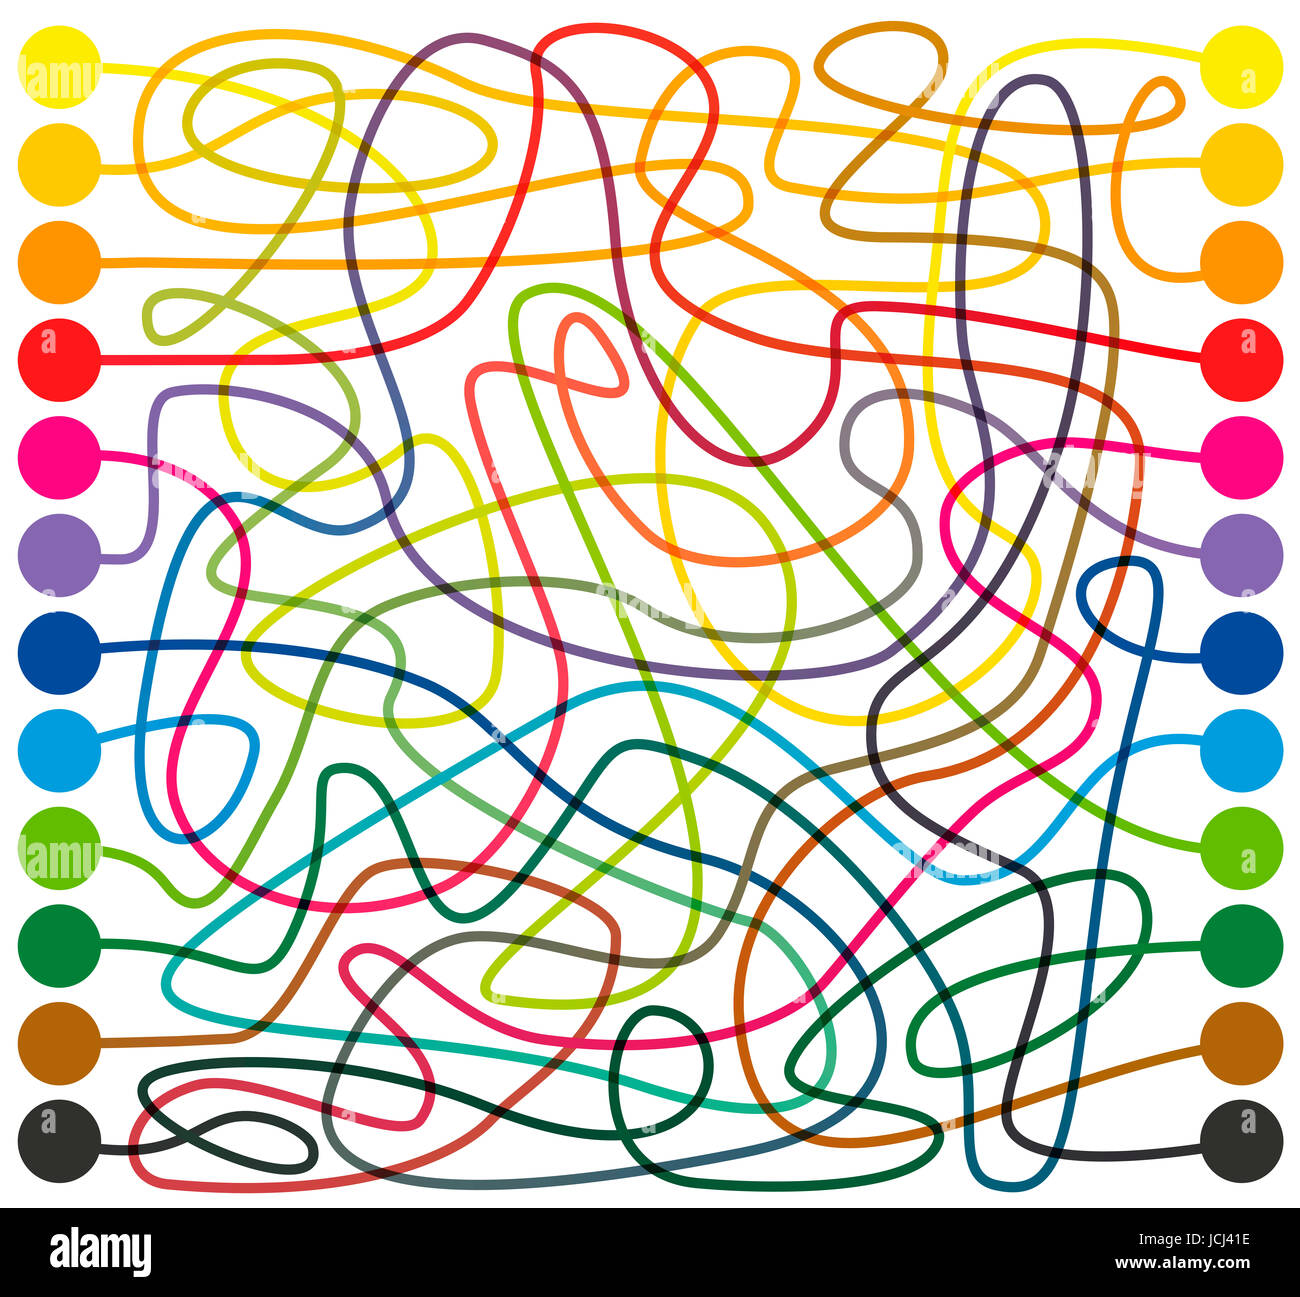 Labyrinth, farbige Linien - die farbigen Punkte zu verbinden, findet den richtigen Weg durch die verworrenen bunte Labyrinth von einem Ende zum anderen. Stockfoto